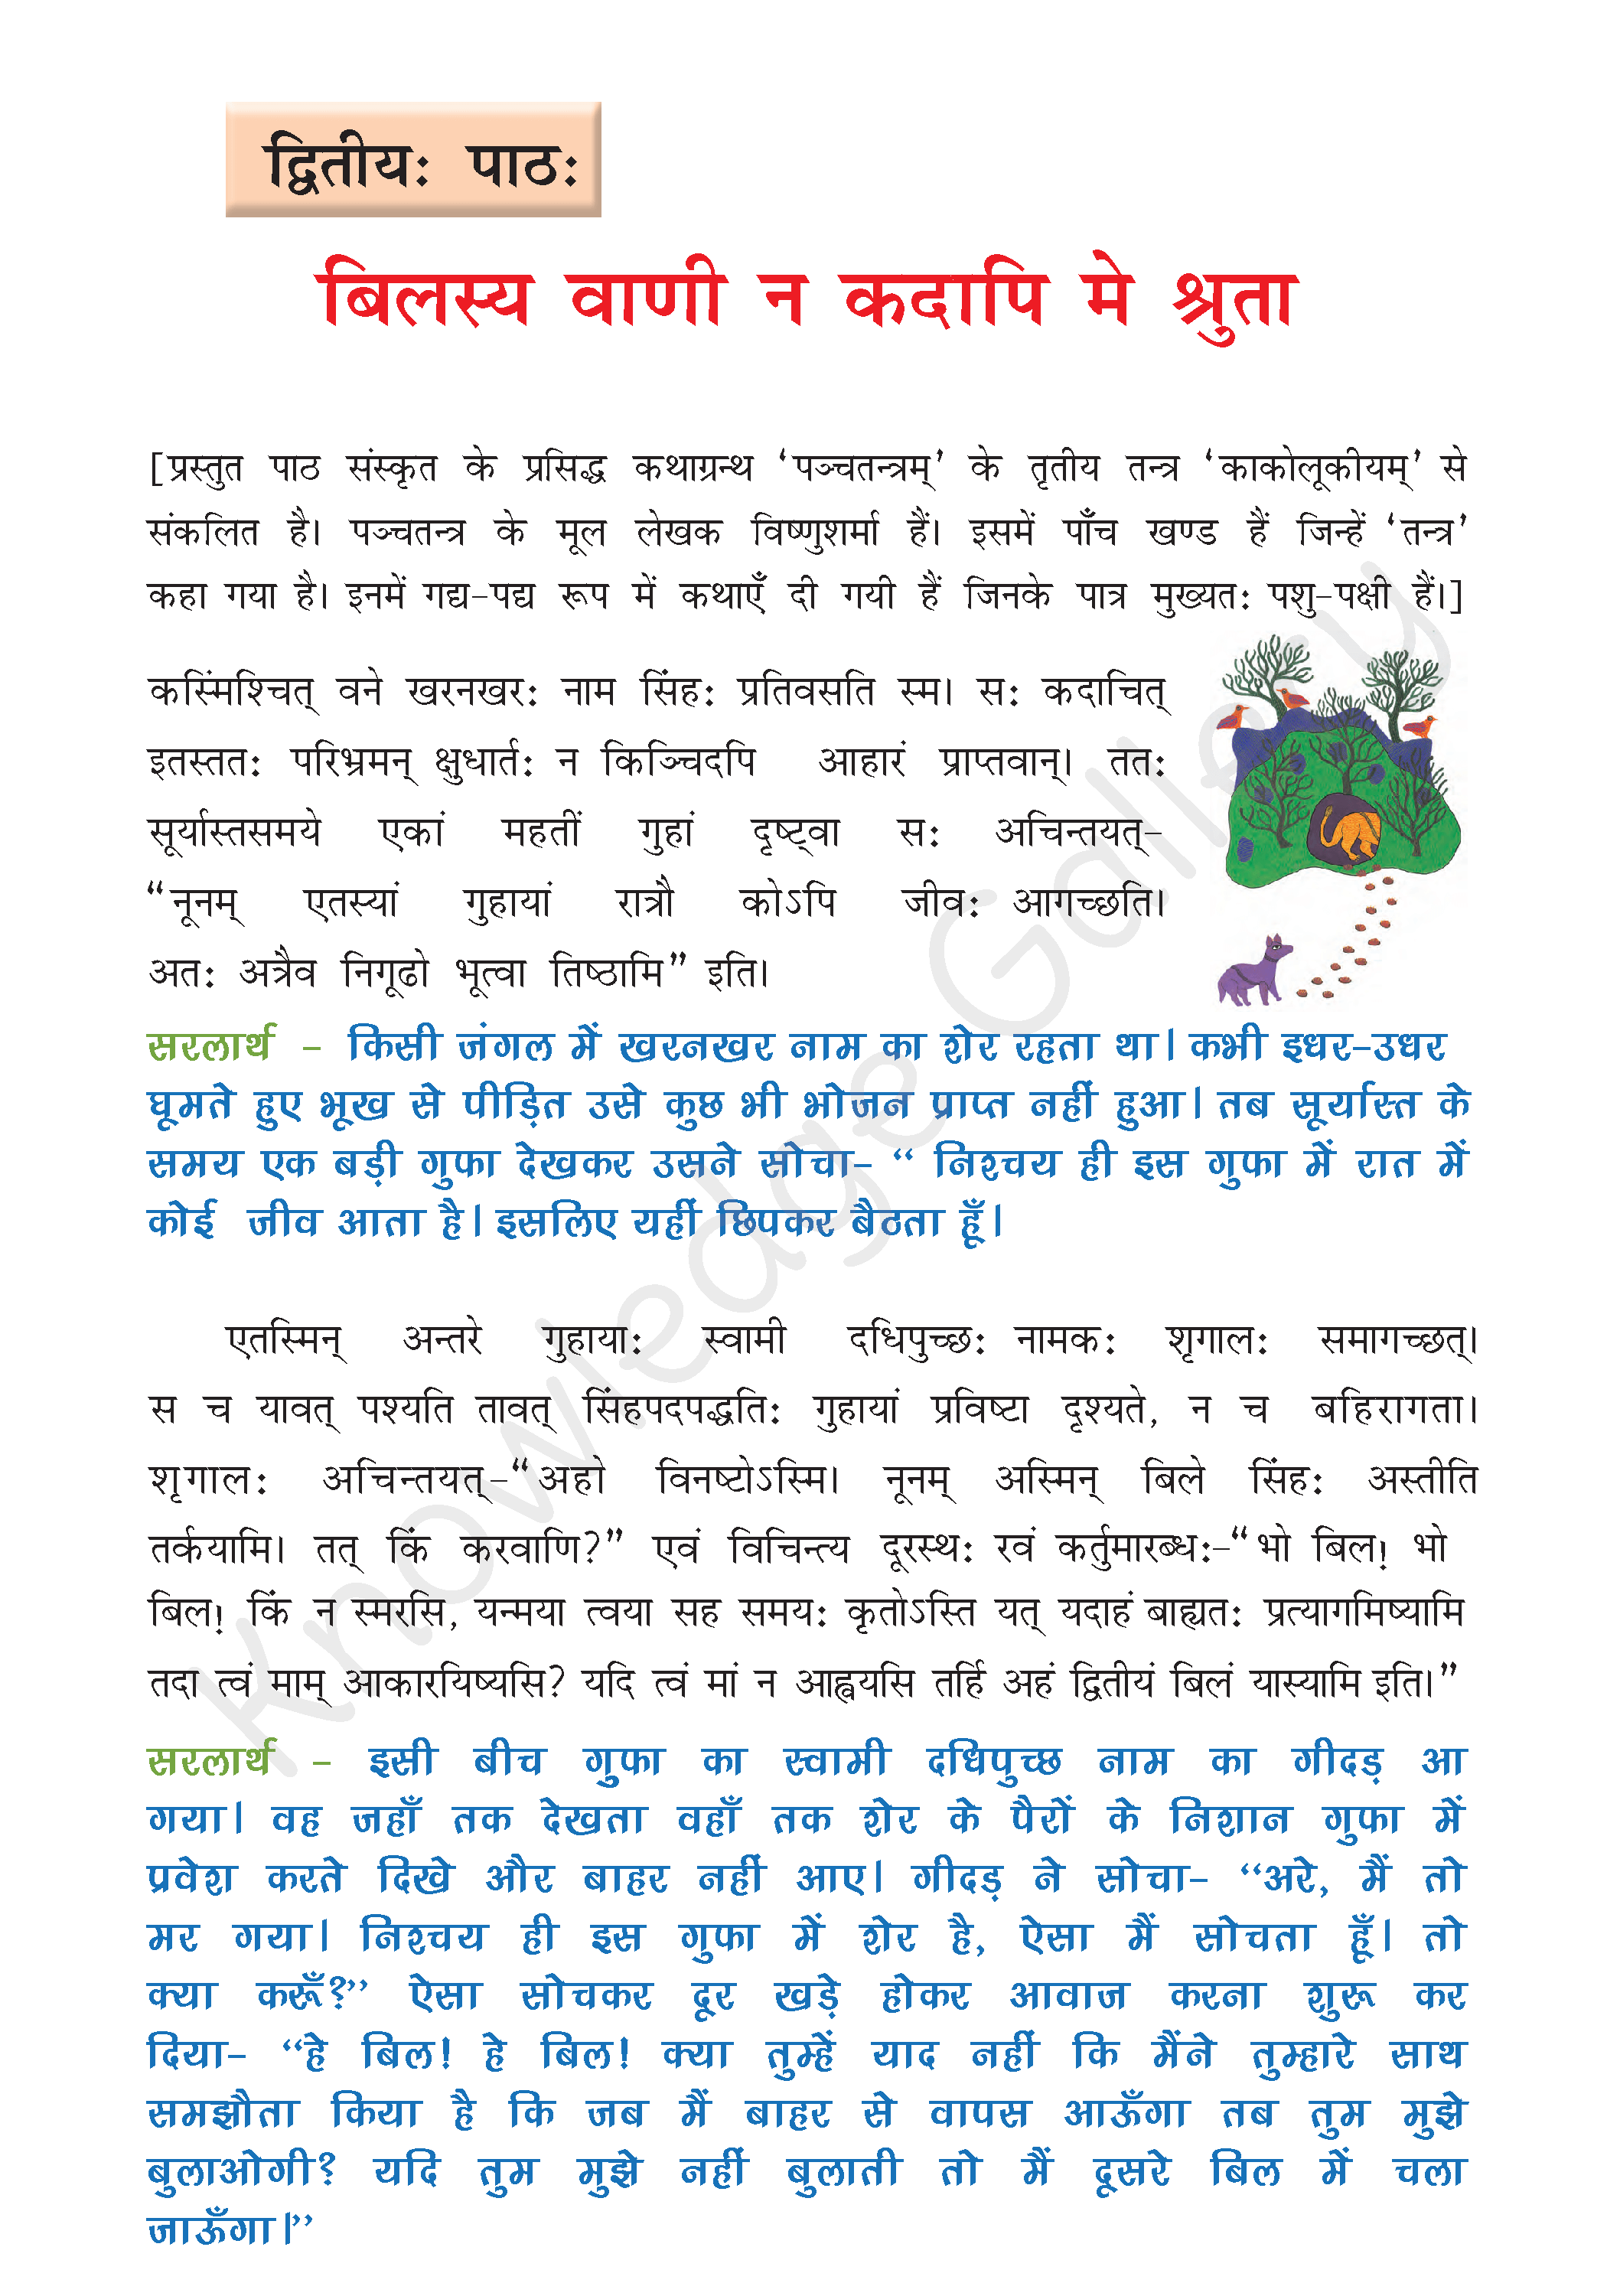 NCERT Solution For Class 8 Sanskrit Chapter 2 part 1